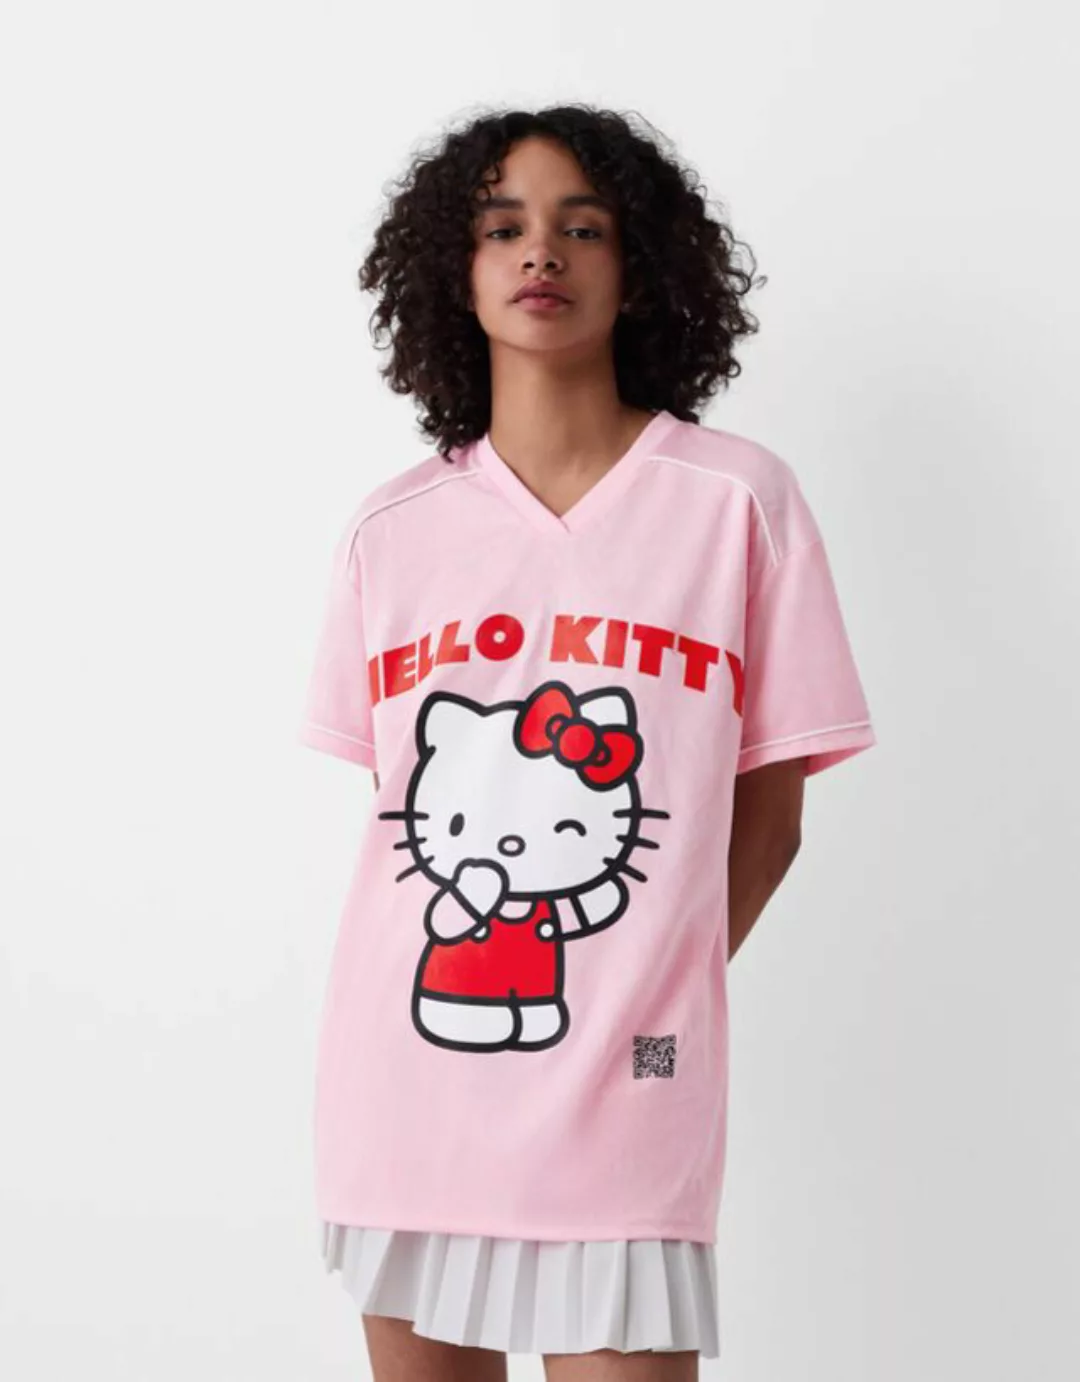 Bershka T-Shirt Hello Kitty Mania Mit Digitalem Filter Und Kurzen Ärmeln Da günstig online kaufen